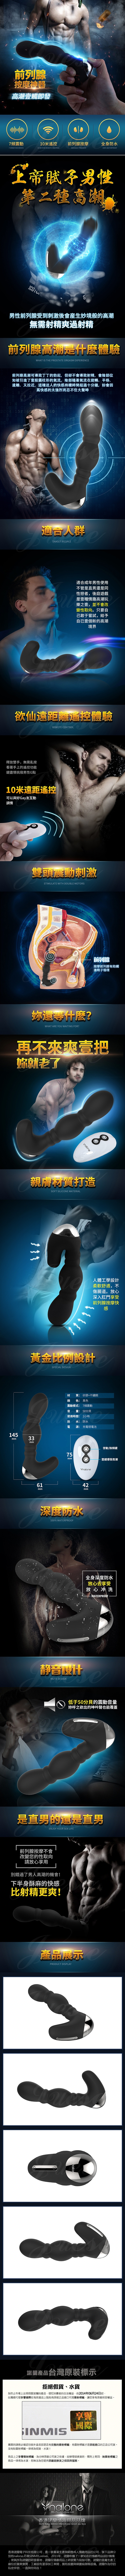 香港Nalone-龍珠Dargon 7段變頻G點陰蒂防水前列腺按摩棒